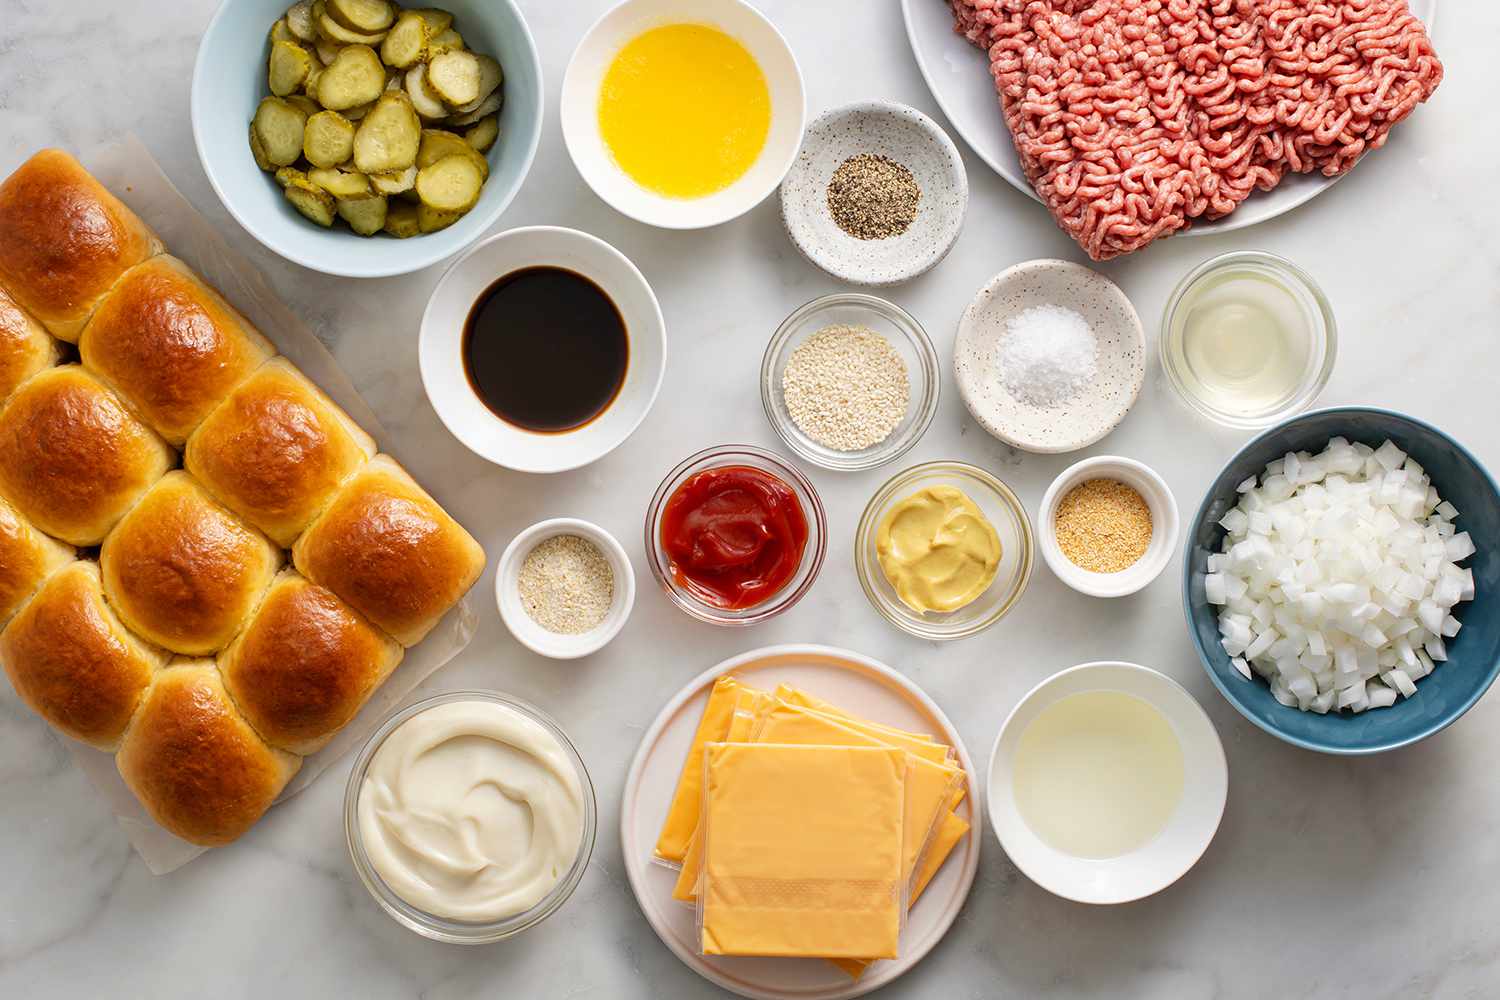 Ingredients to make cheeseburger sliders